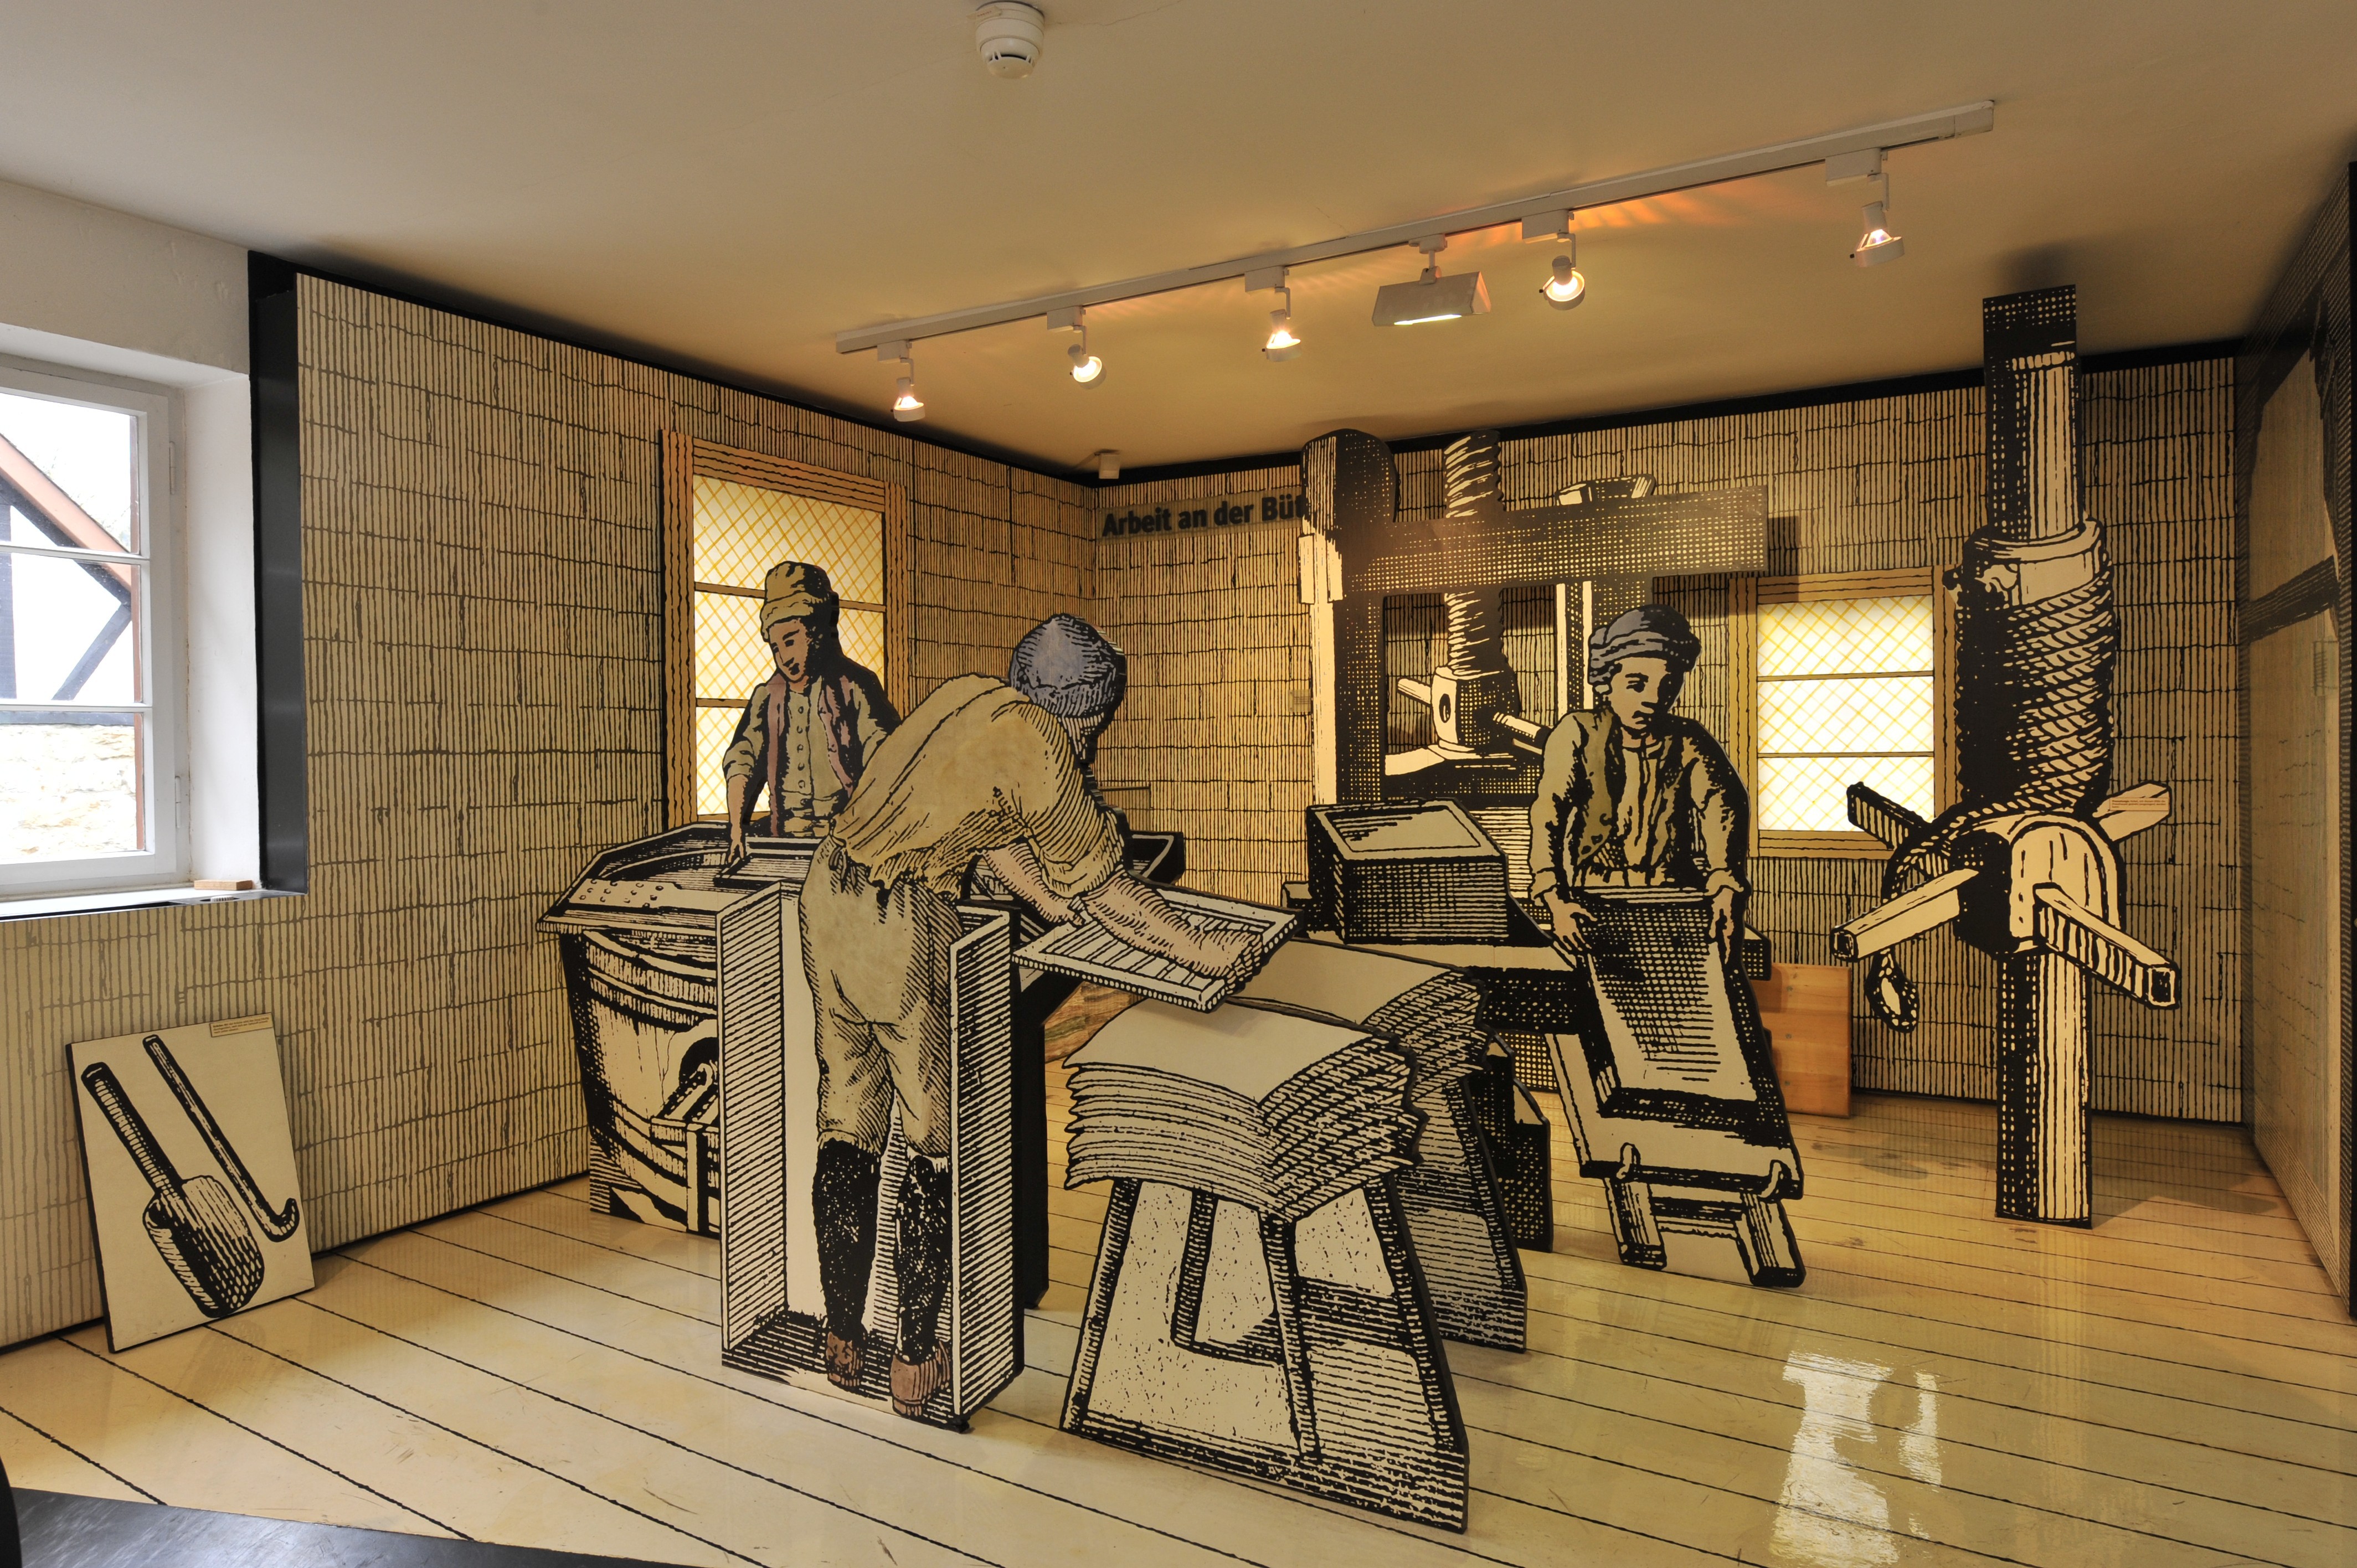 Wie es früher in den Papiermühlen zuging, zeigen Inszenierungen, die aus historischen Kupferstichen zusammengesetzt sind. Ein Papiermacher konnte an einem Tag bis zu 6.000 Bögen schöpfen.